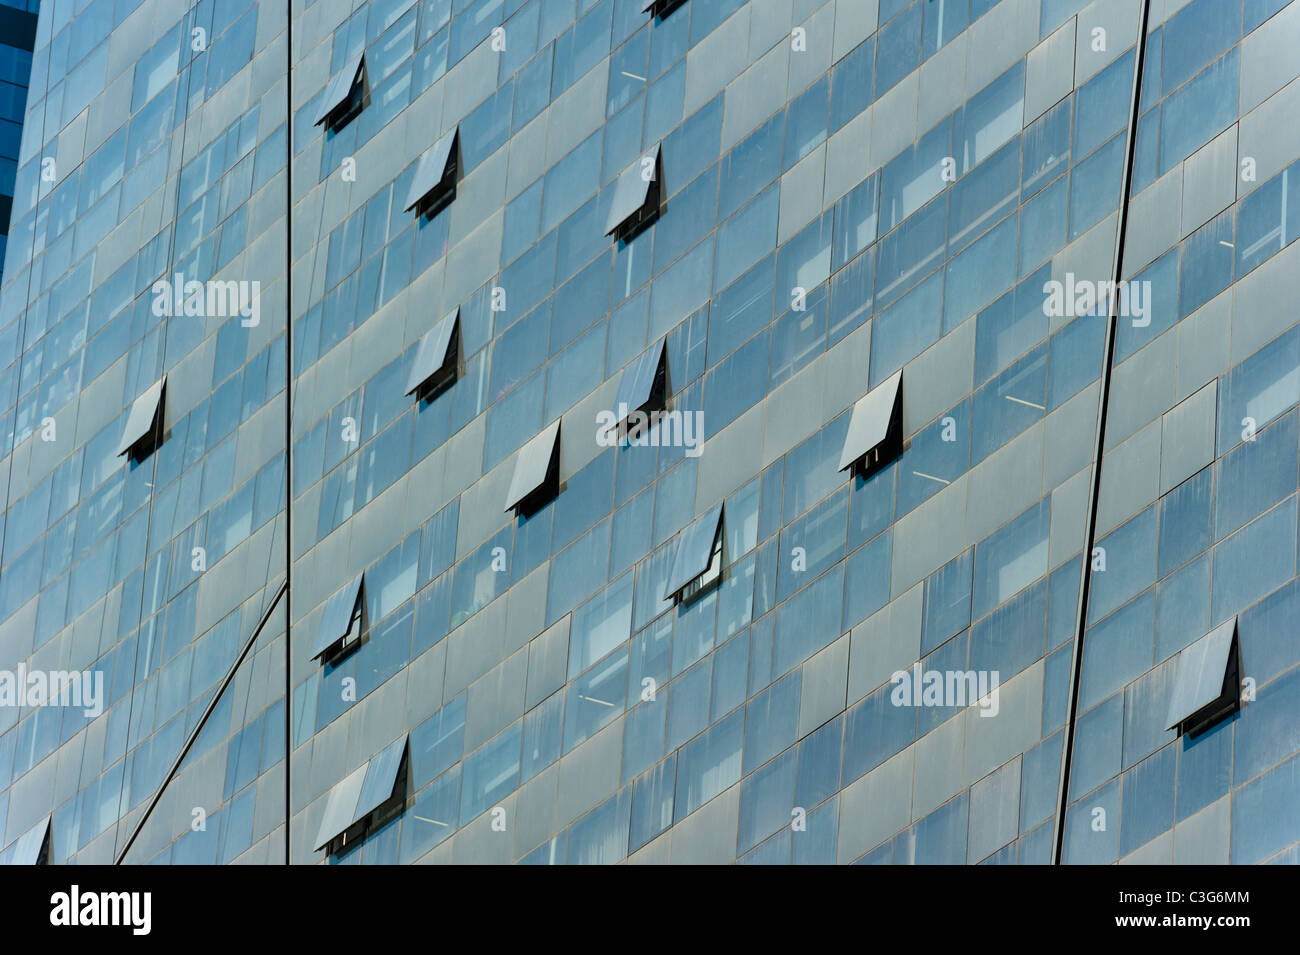 SOHO Shangdu Komplex, basierend auf Fraktale, von LAB Architecture Studio, 2007, neue Osten CBD, Chaoyang District, Beijing, China. Stockfoto